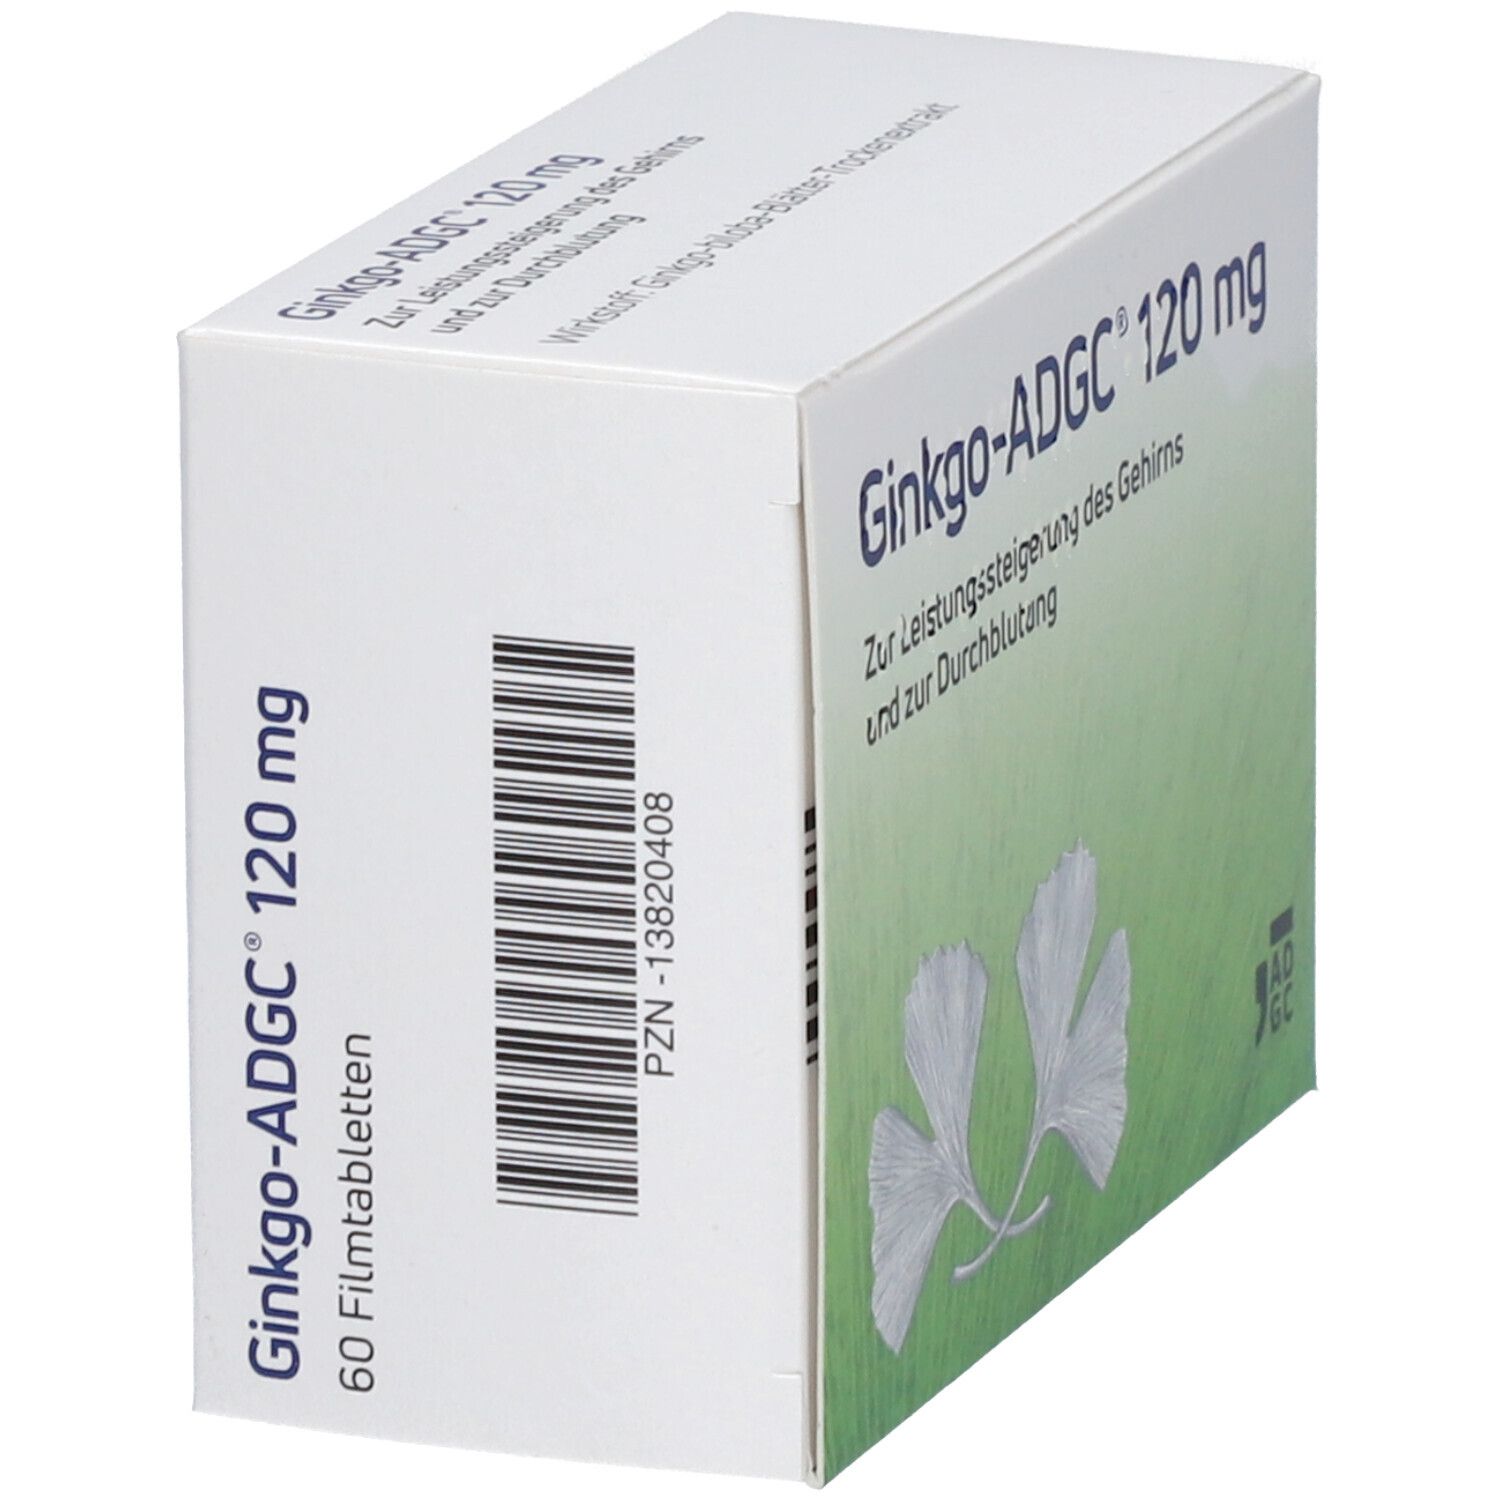 Ginkgo-ADGC® 120 mg